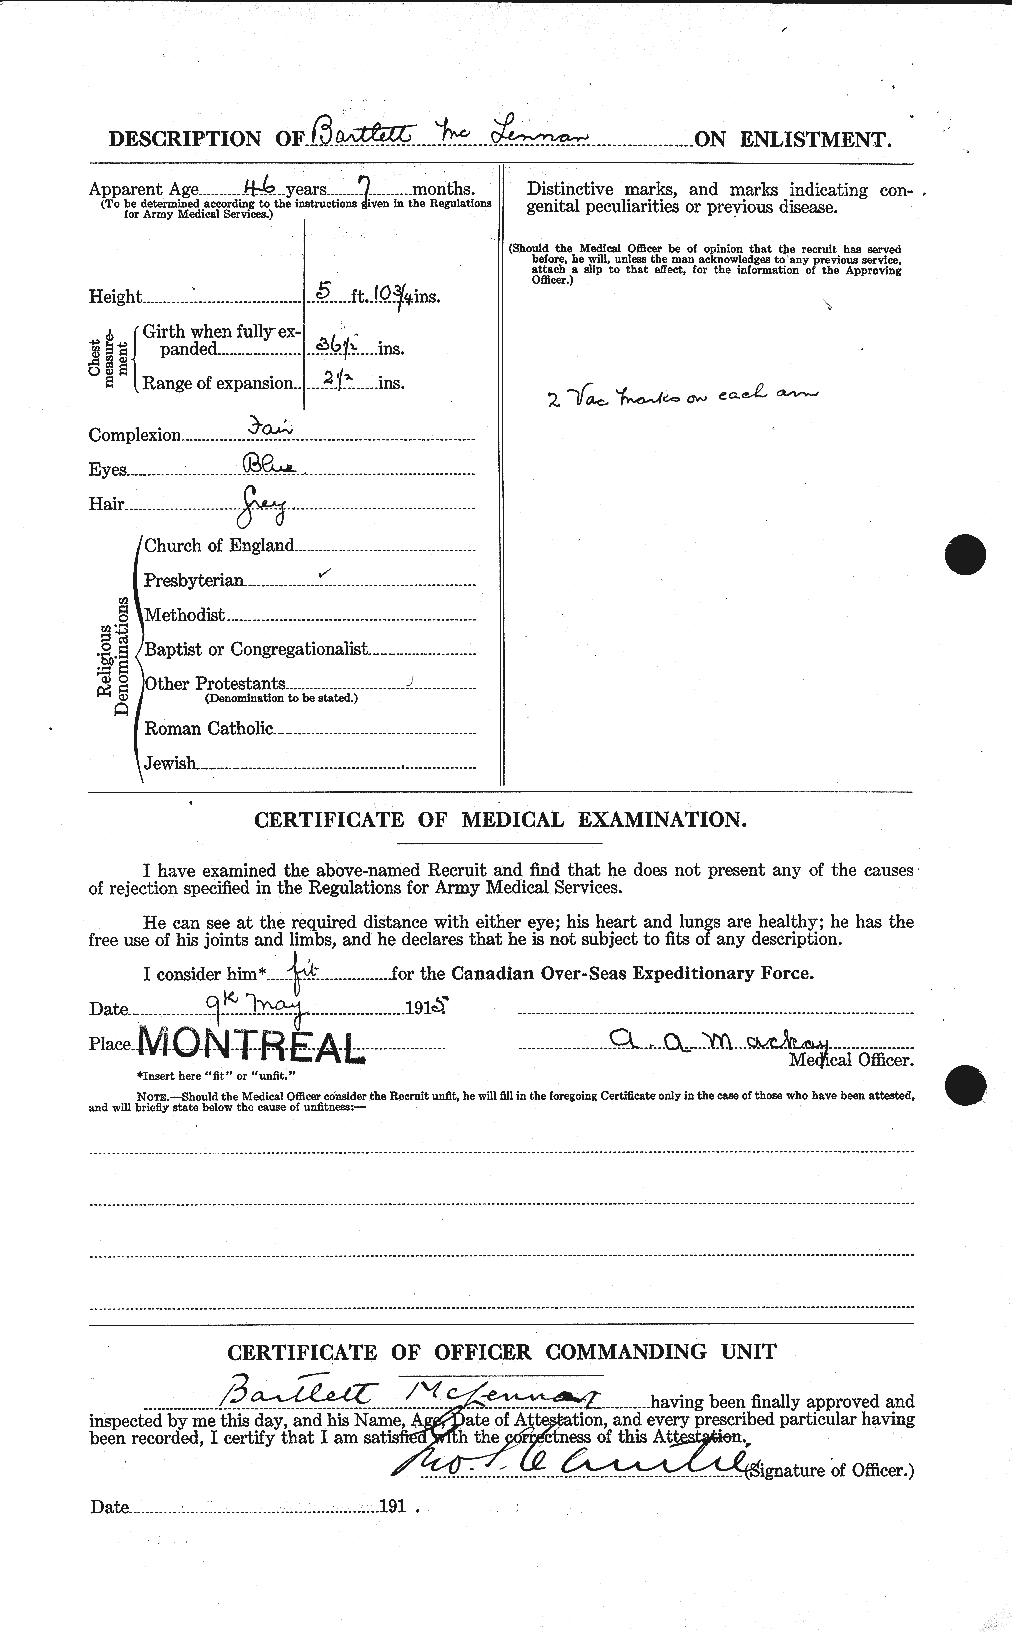 Dossiers du Personnel de la Première Guerre mondiale - CEC 534427b